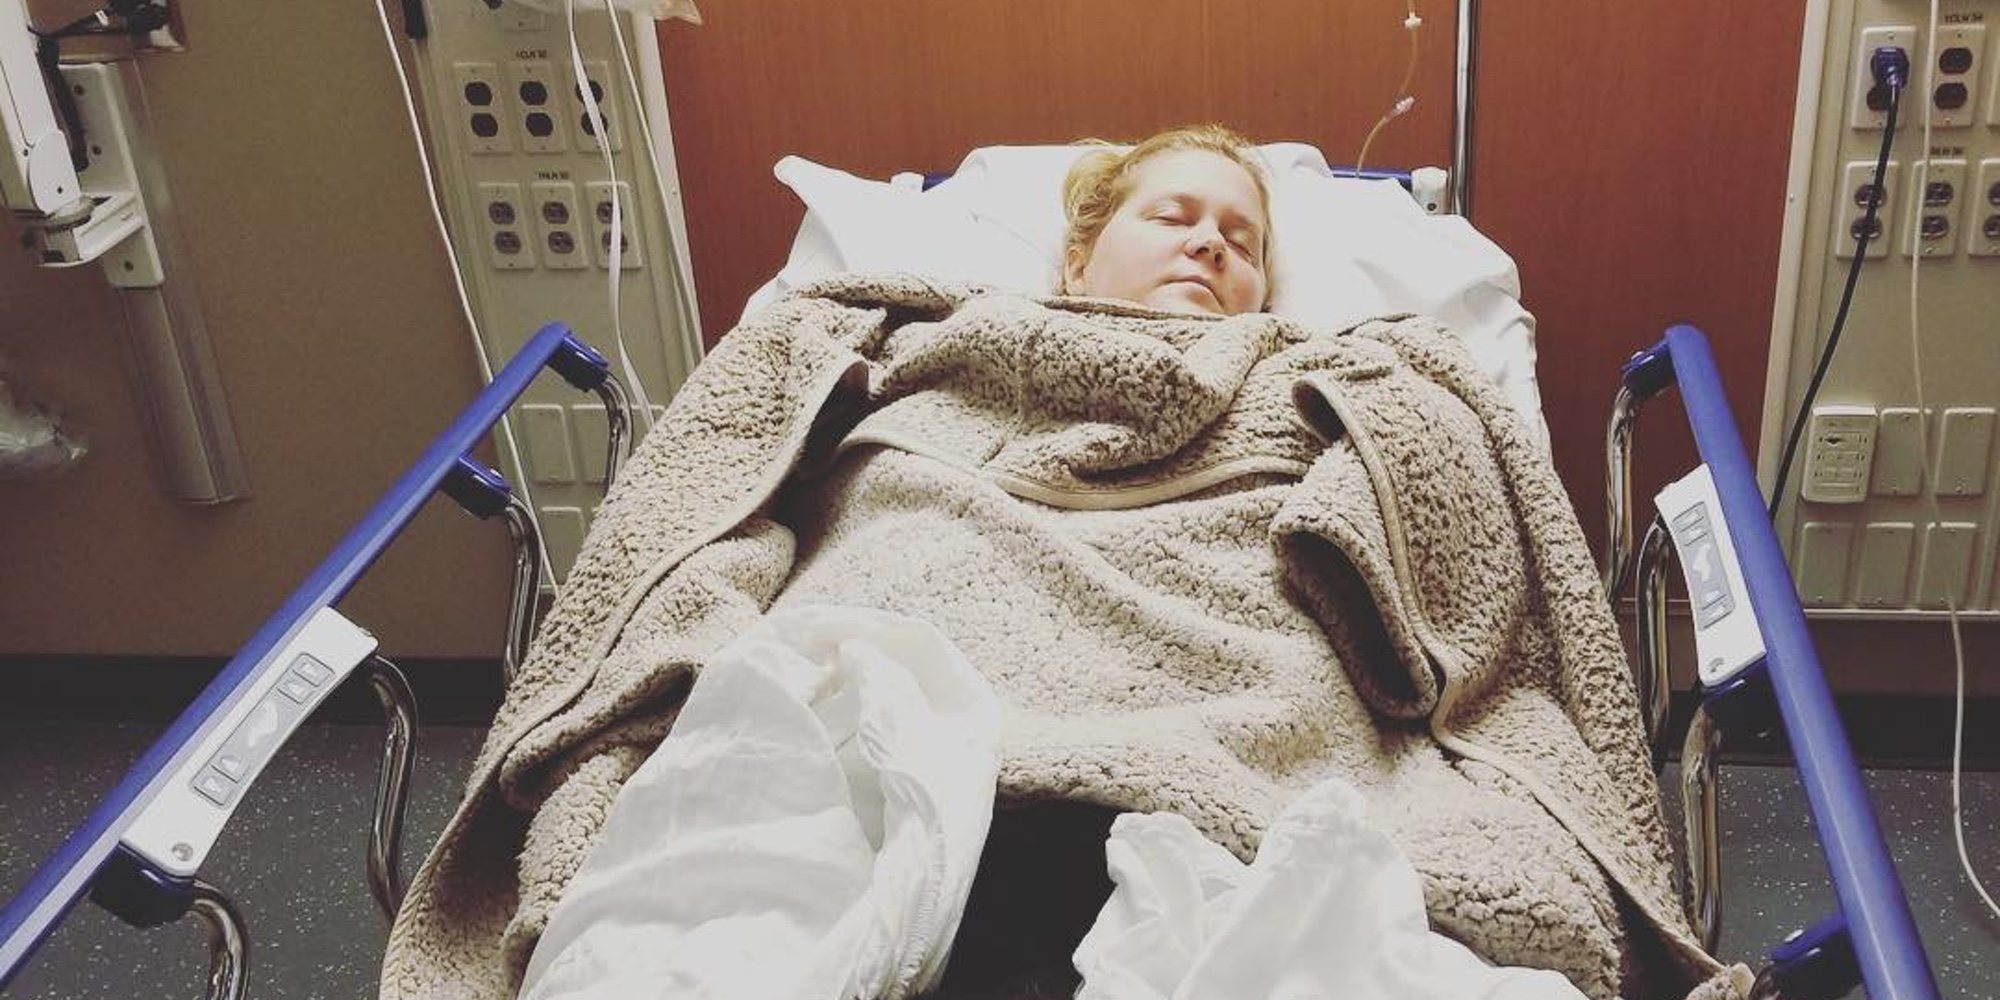 Amy Schumer, hospitalizada al sufrir hiperémesis gravídica en el segundo trimestre de su embarazo